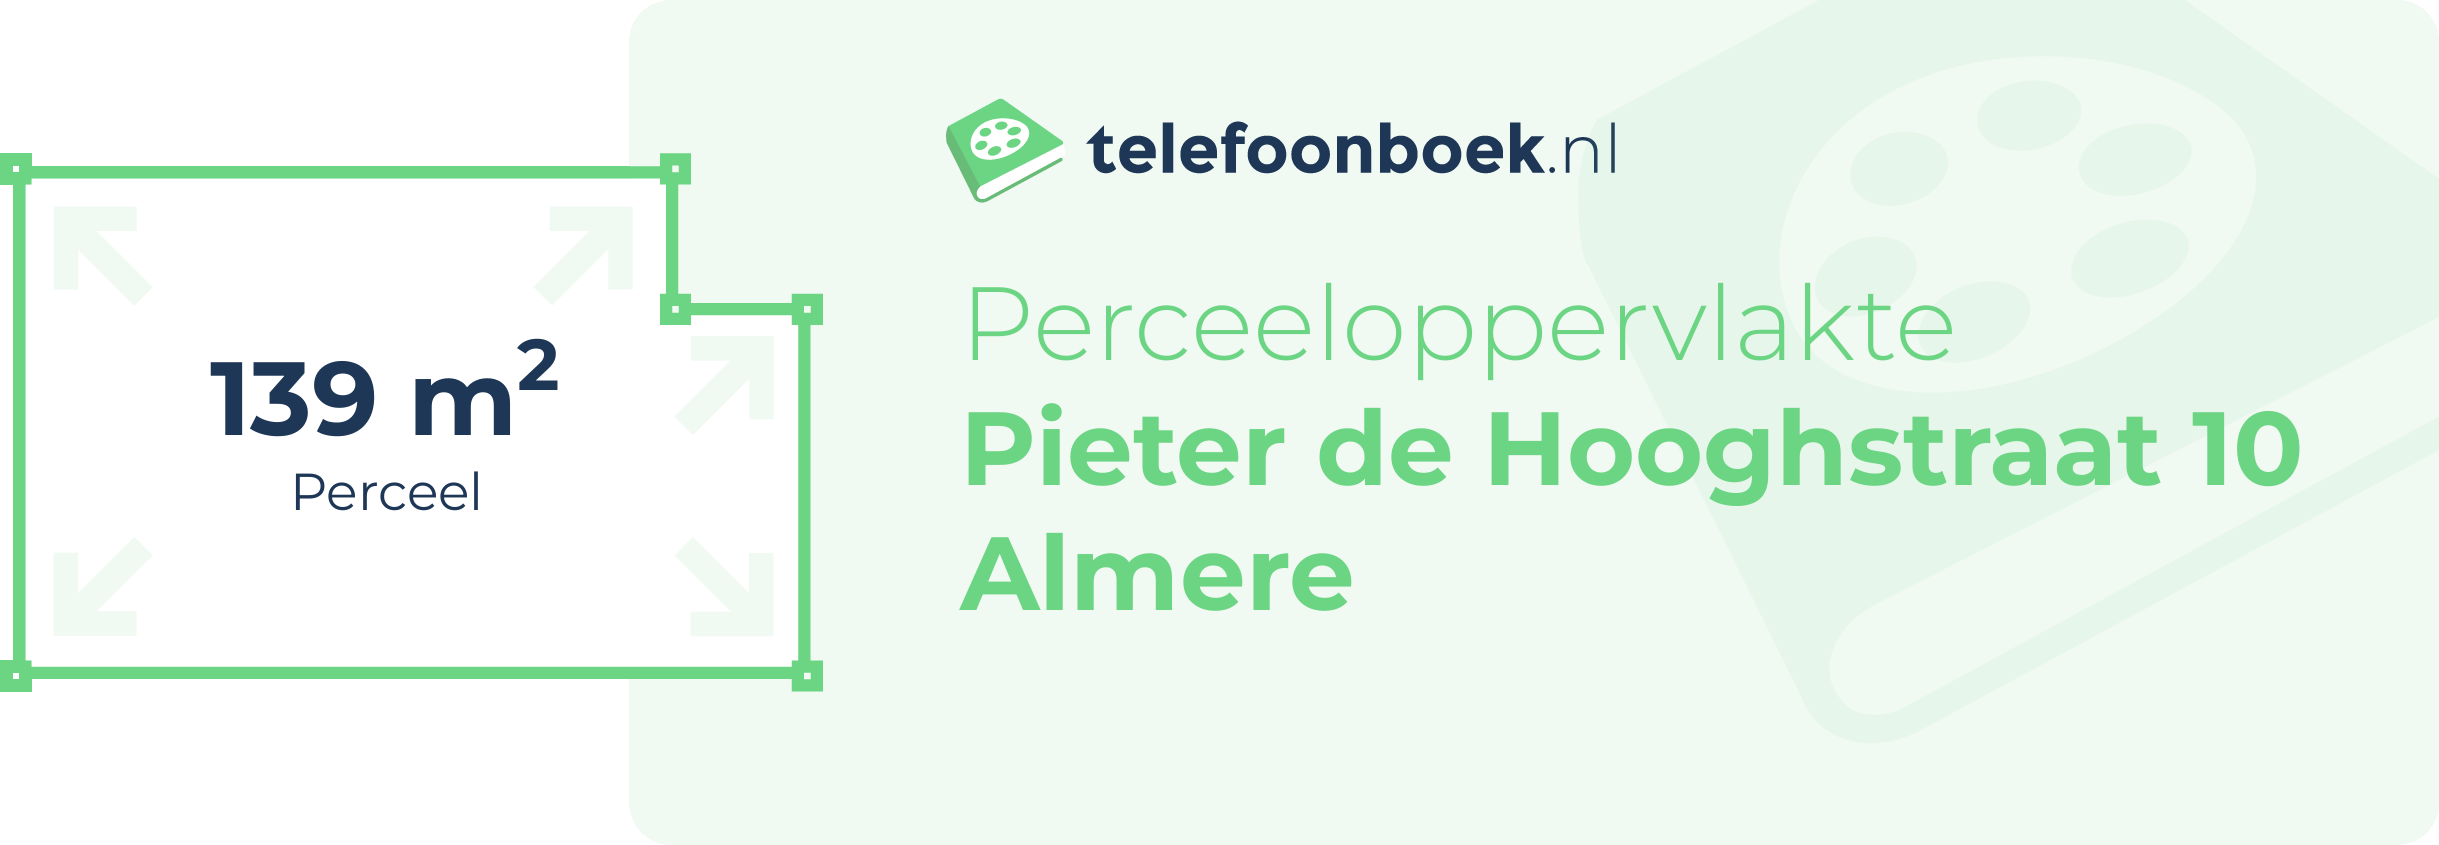 Perceeloppervlakte Pieter De Hooghstraat 10 Almere